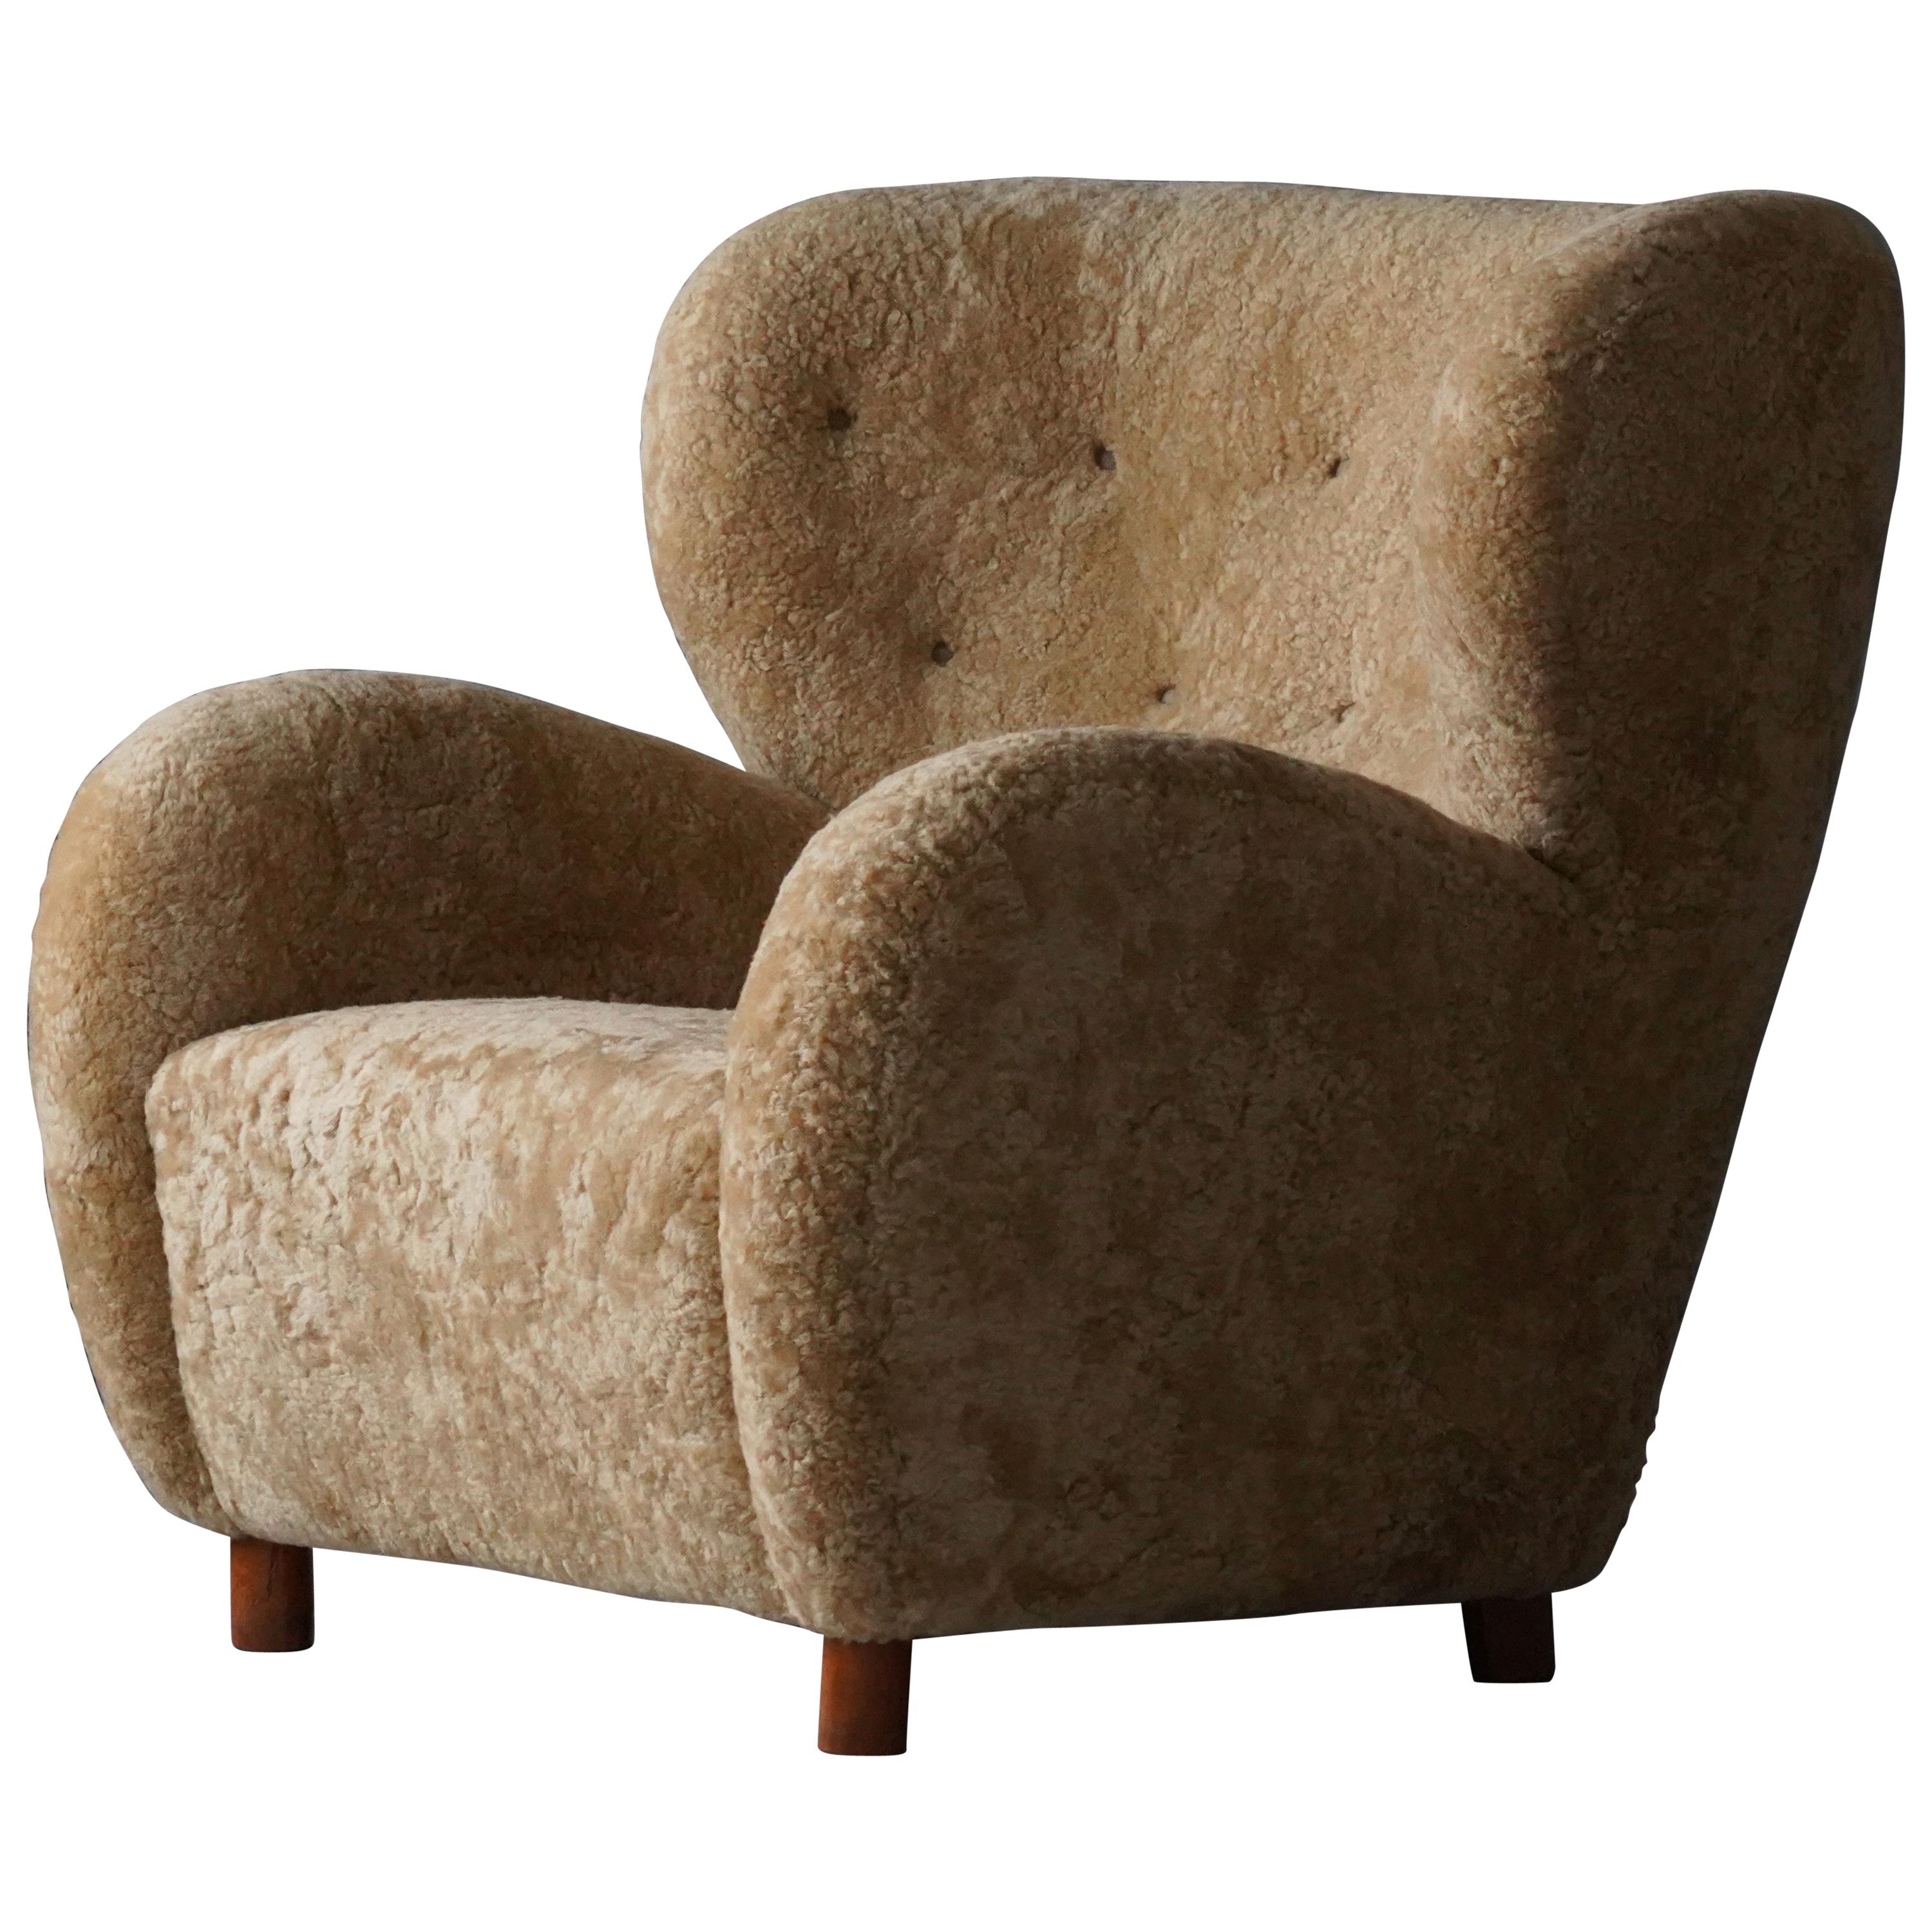 Flemming Lassen 'Attribution' Lounge Chair, Beige Sheepskin Beech, Denmark 1940s